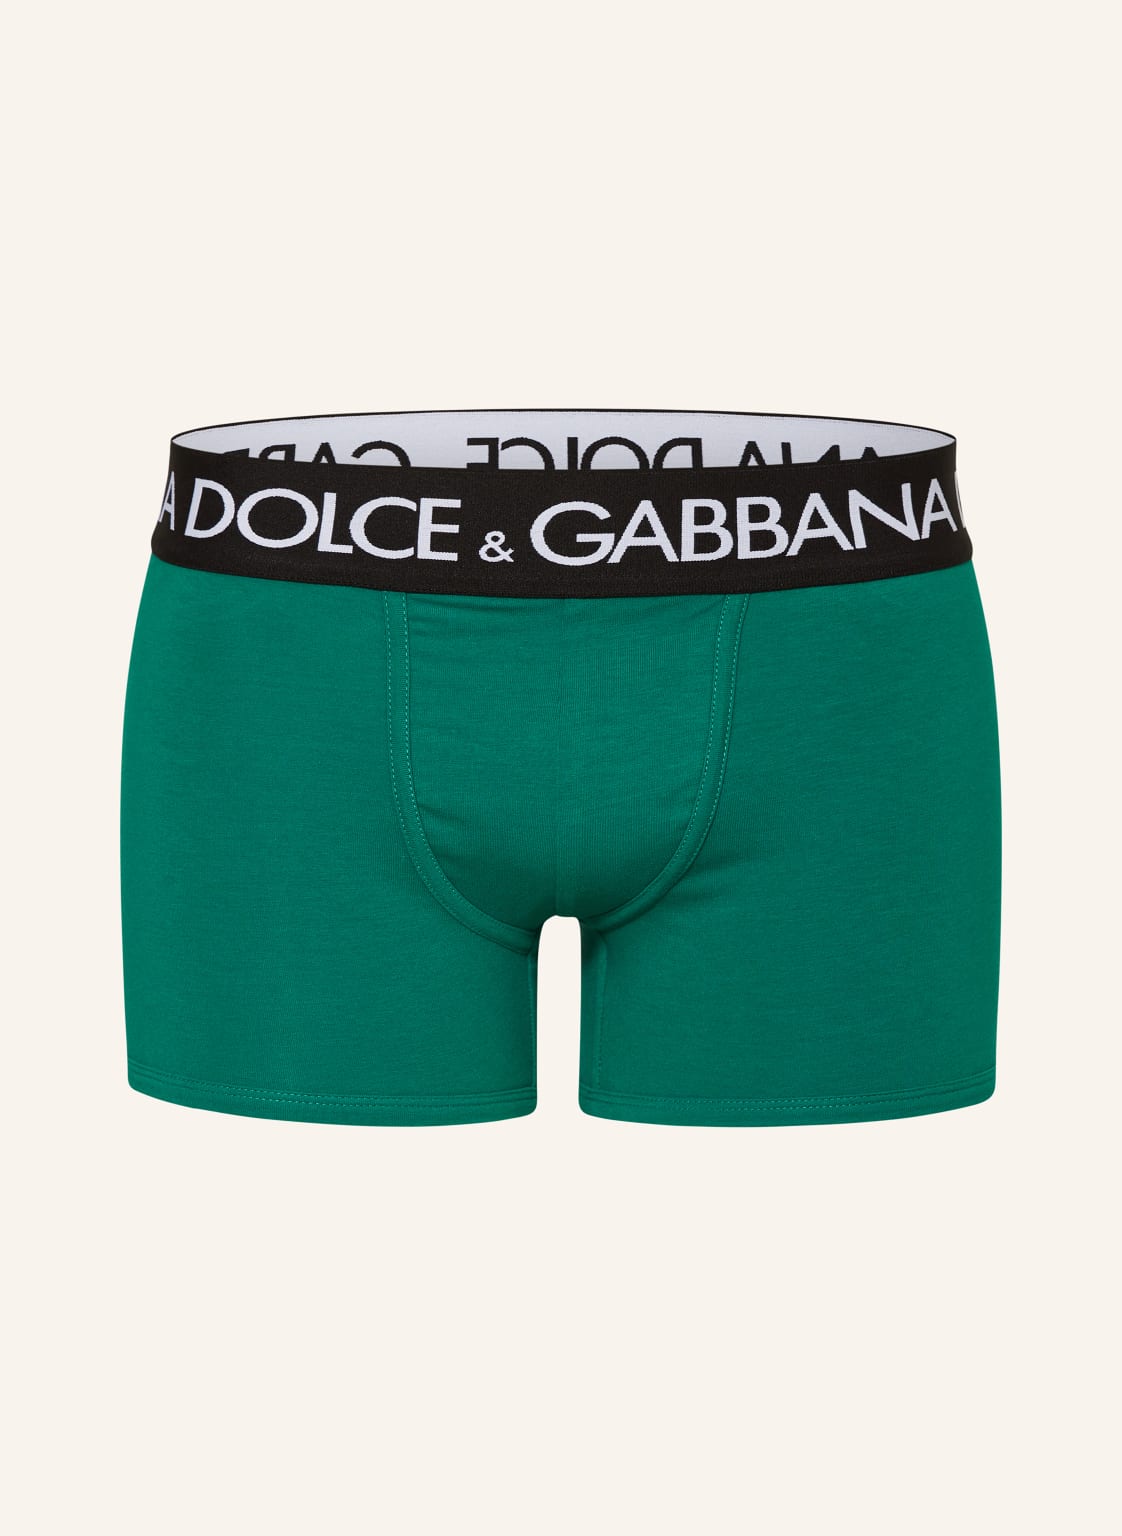 Dolce & Gabbana Boxershorts gruen von Dolce & Gabbana